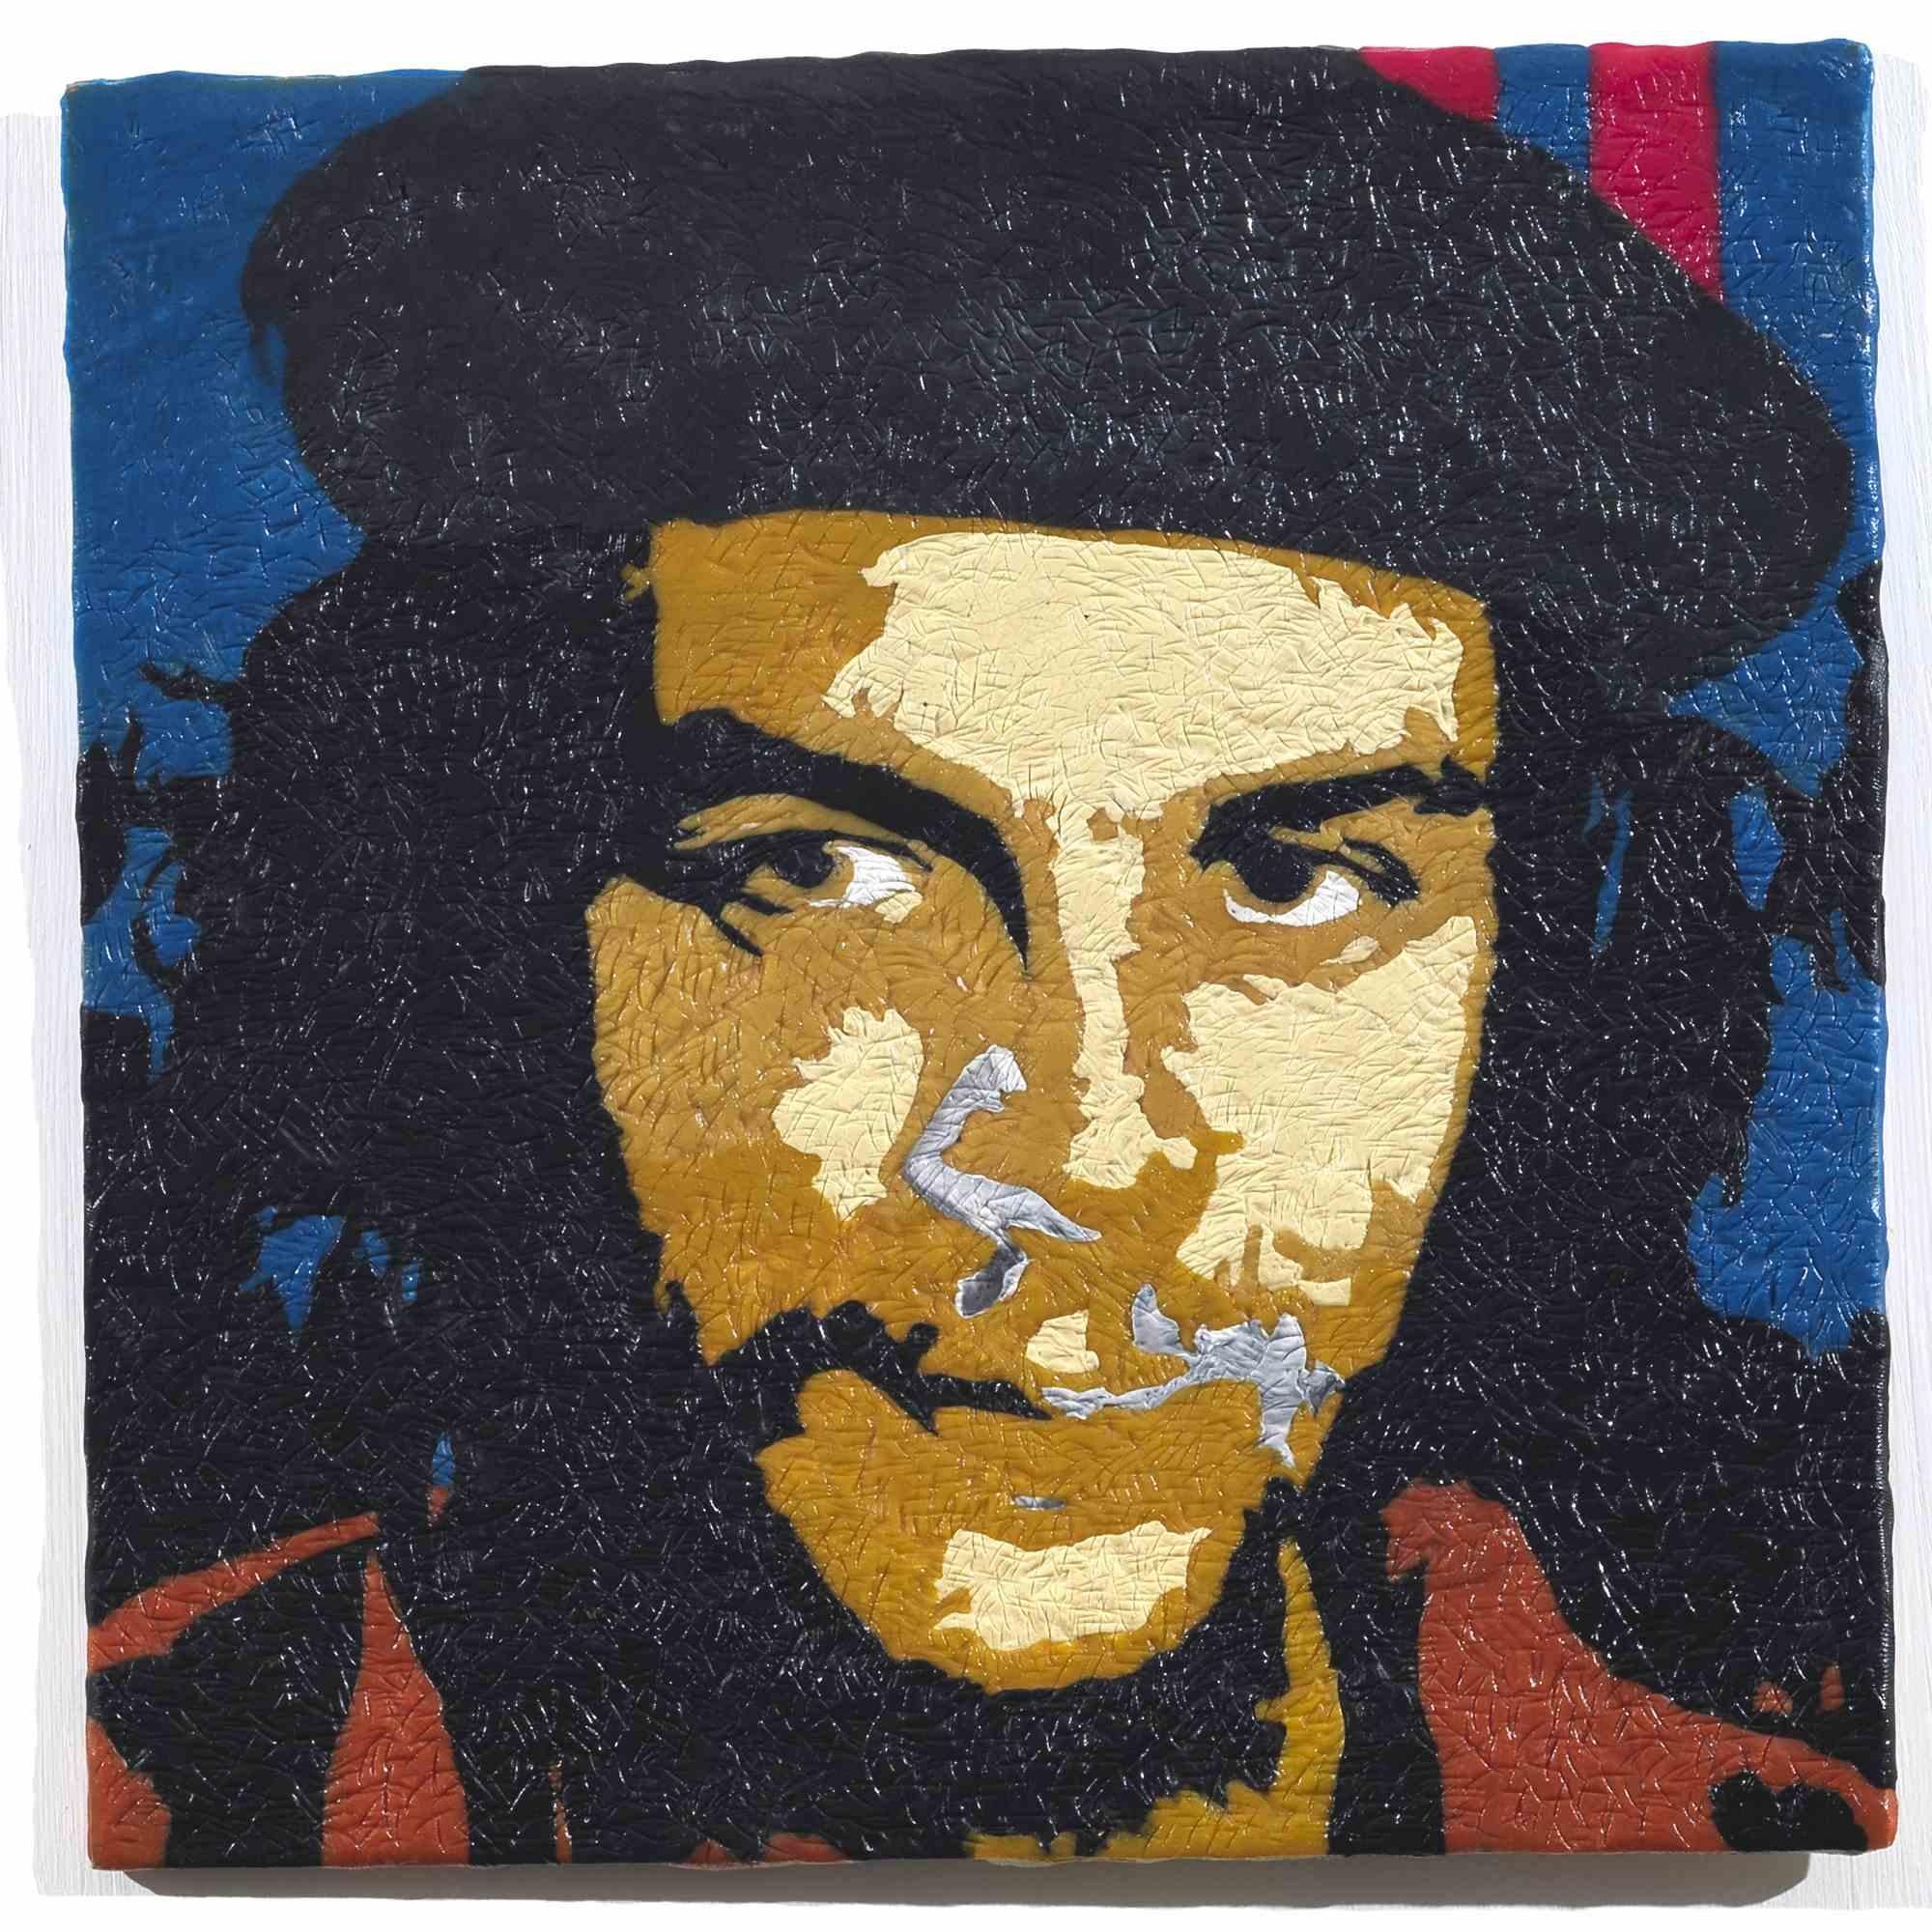 El Che ist ein originelles zeitgenössisches Kunstwerk des italienischen Künstlers Maurizio Savini (geb. 1962 in Rom) aus dem Jahr 2014. 

Original Enkaustik von Kaugummi auf Karton. 

Handsigniert vom Künstler auf der Rückseite des Kunstwerks. 

Das